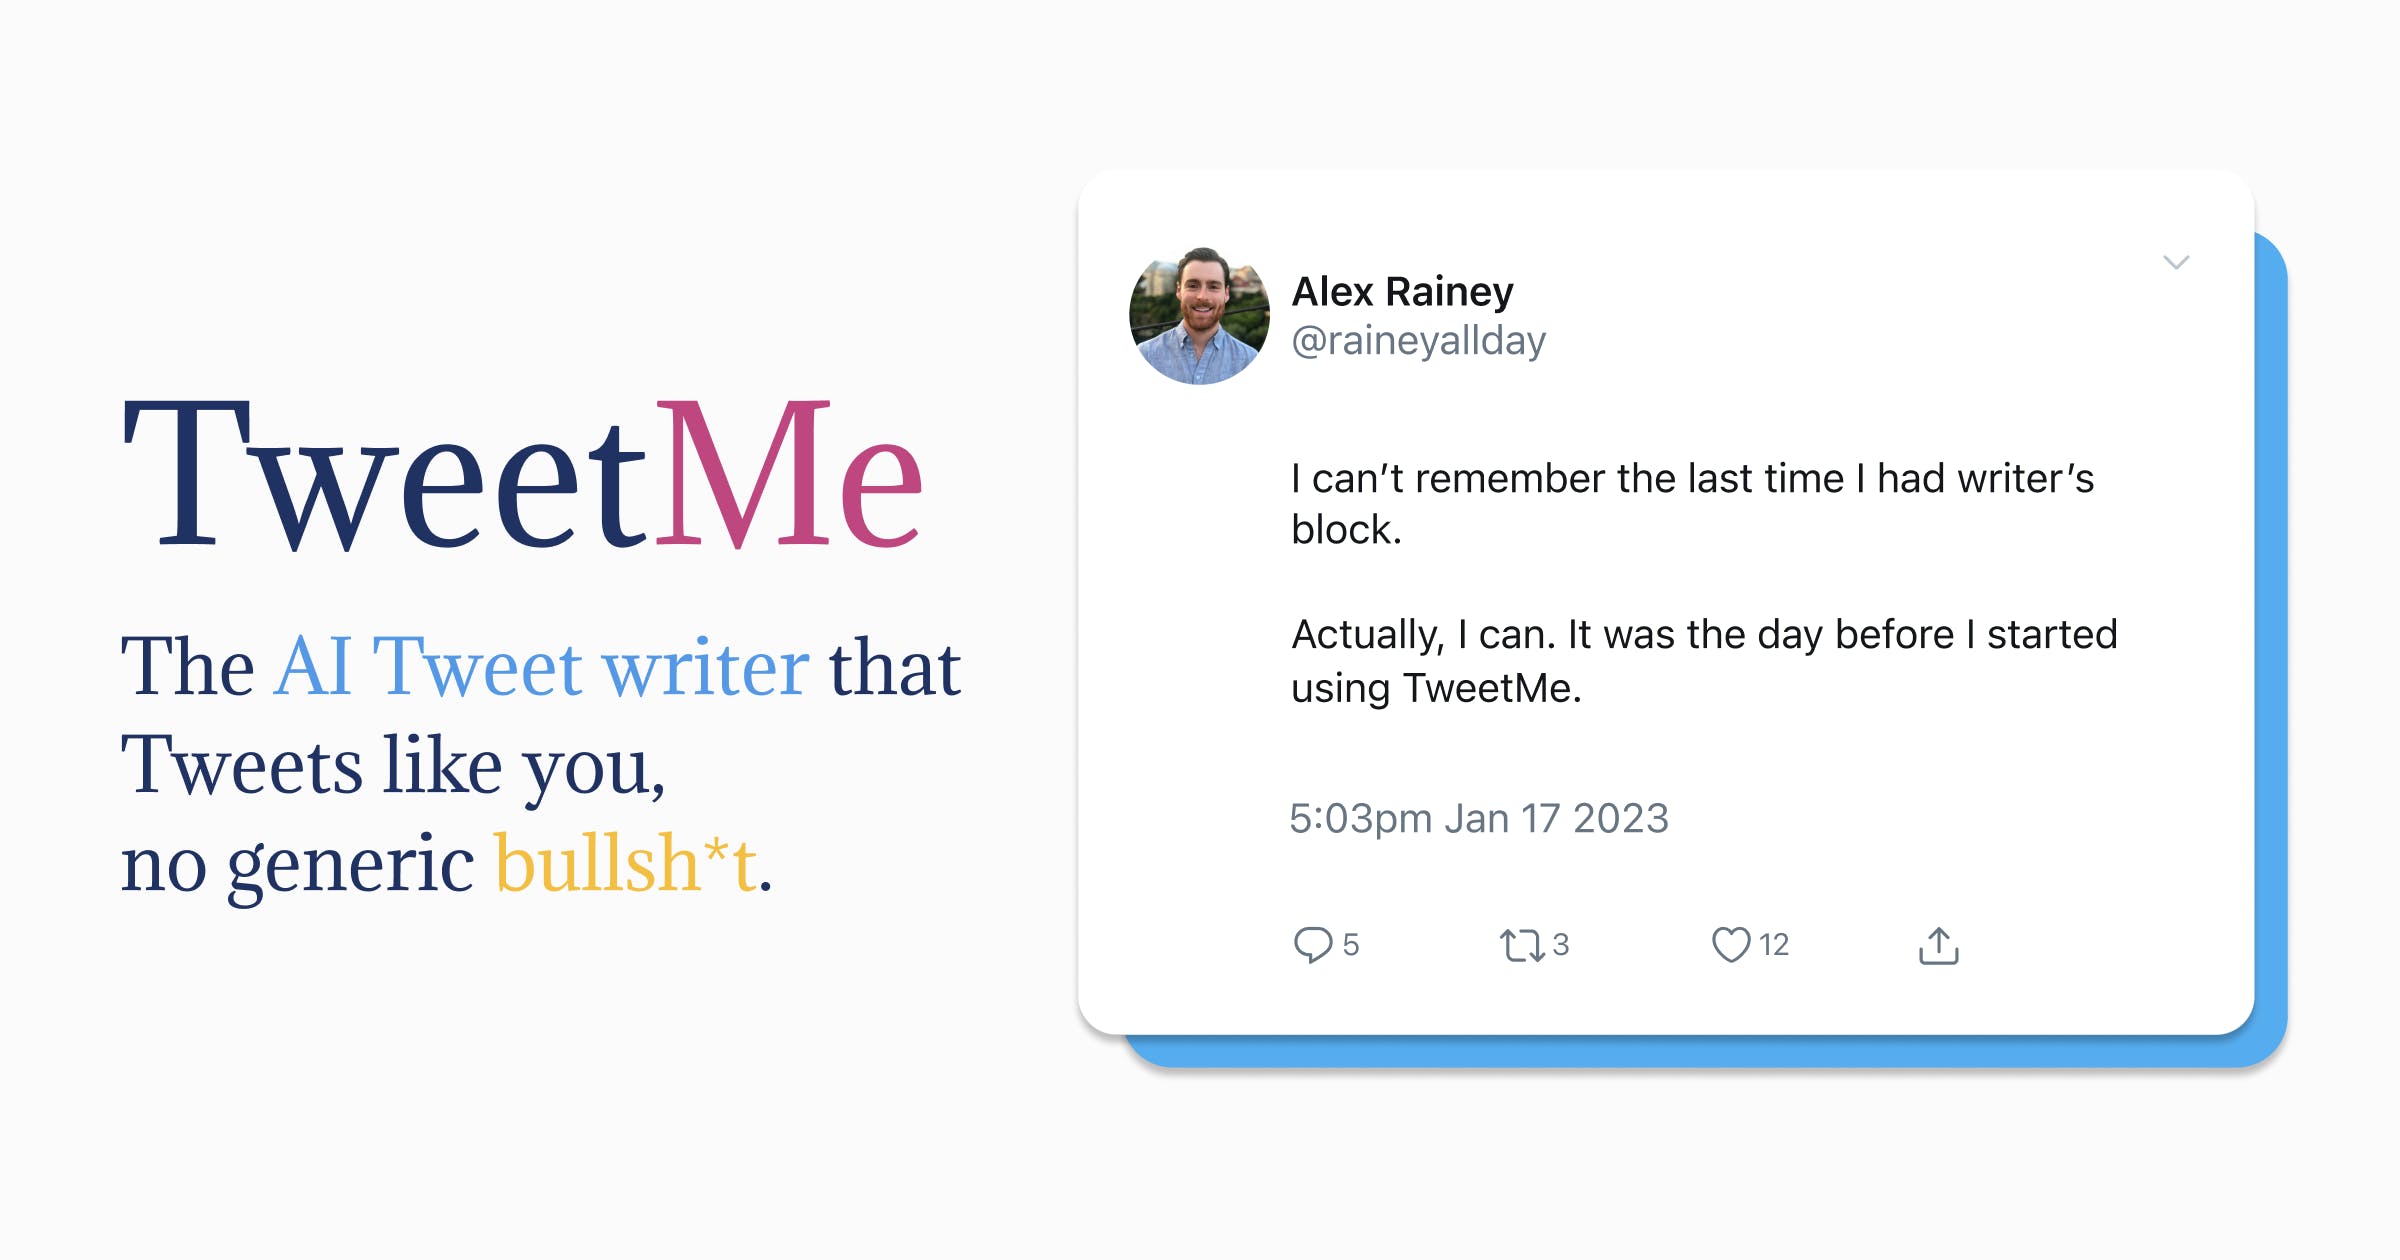 TweetMe - AI Tweet writer that writes like you